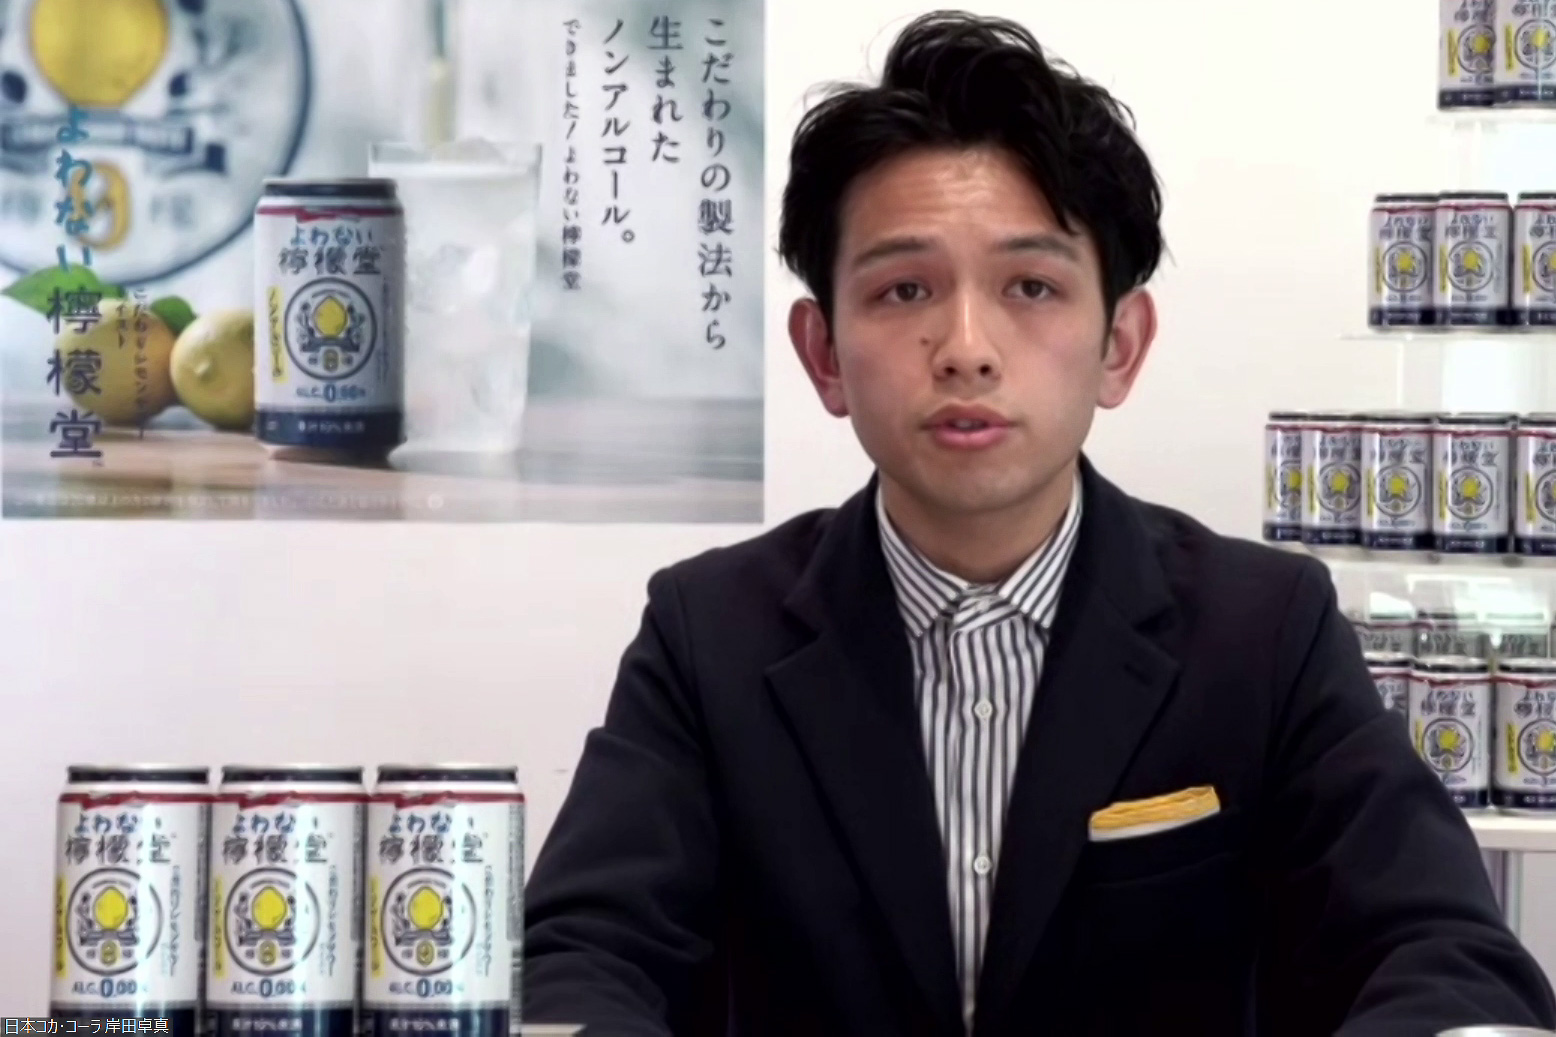 日本コカ・コーラ、初のノンアルコールブランド「よわない檸檬堂」発表 2月7日コンビニ先行発売 - グルメ Watch